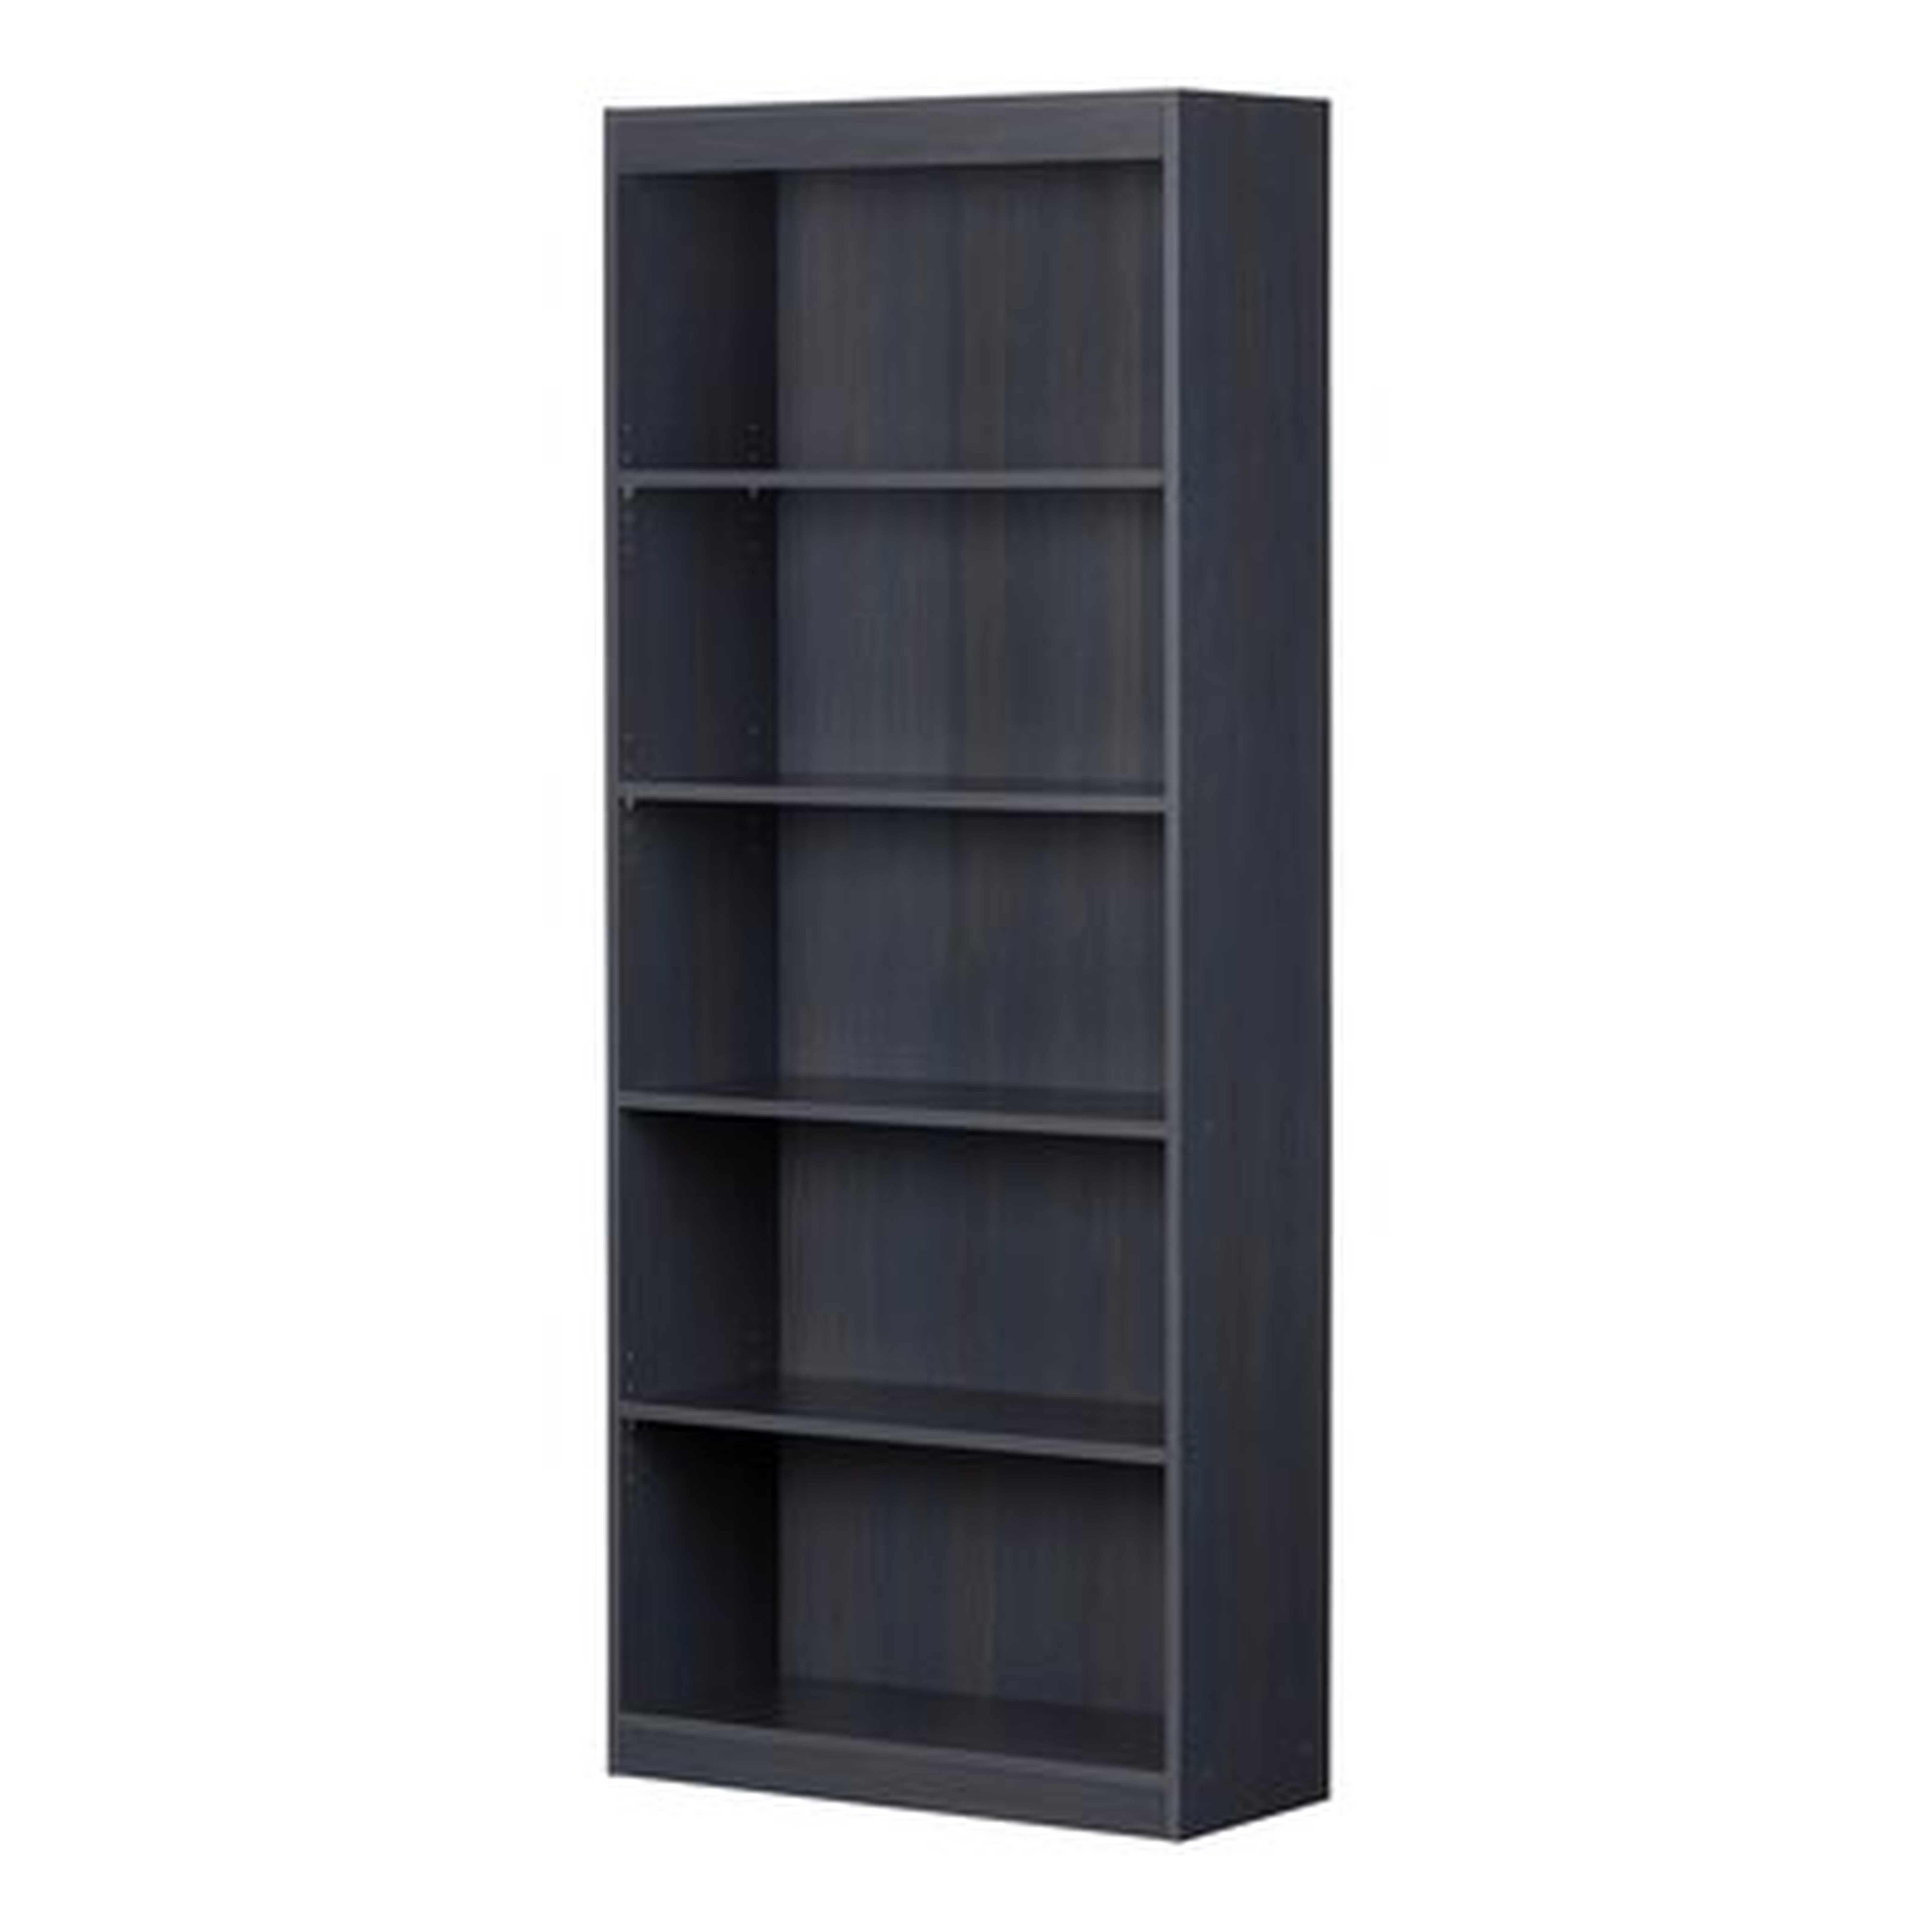 Mosher 68.75" H x 28" W Standard Bookcase - Wayfair